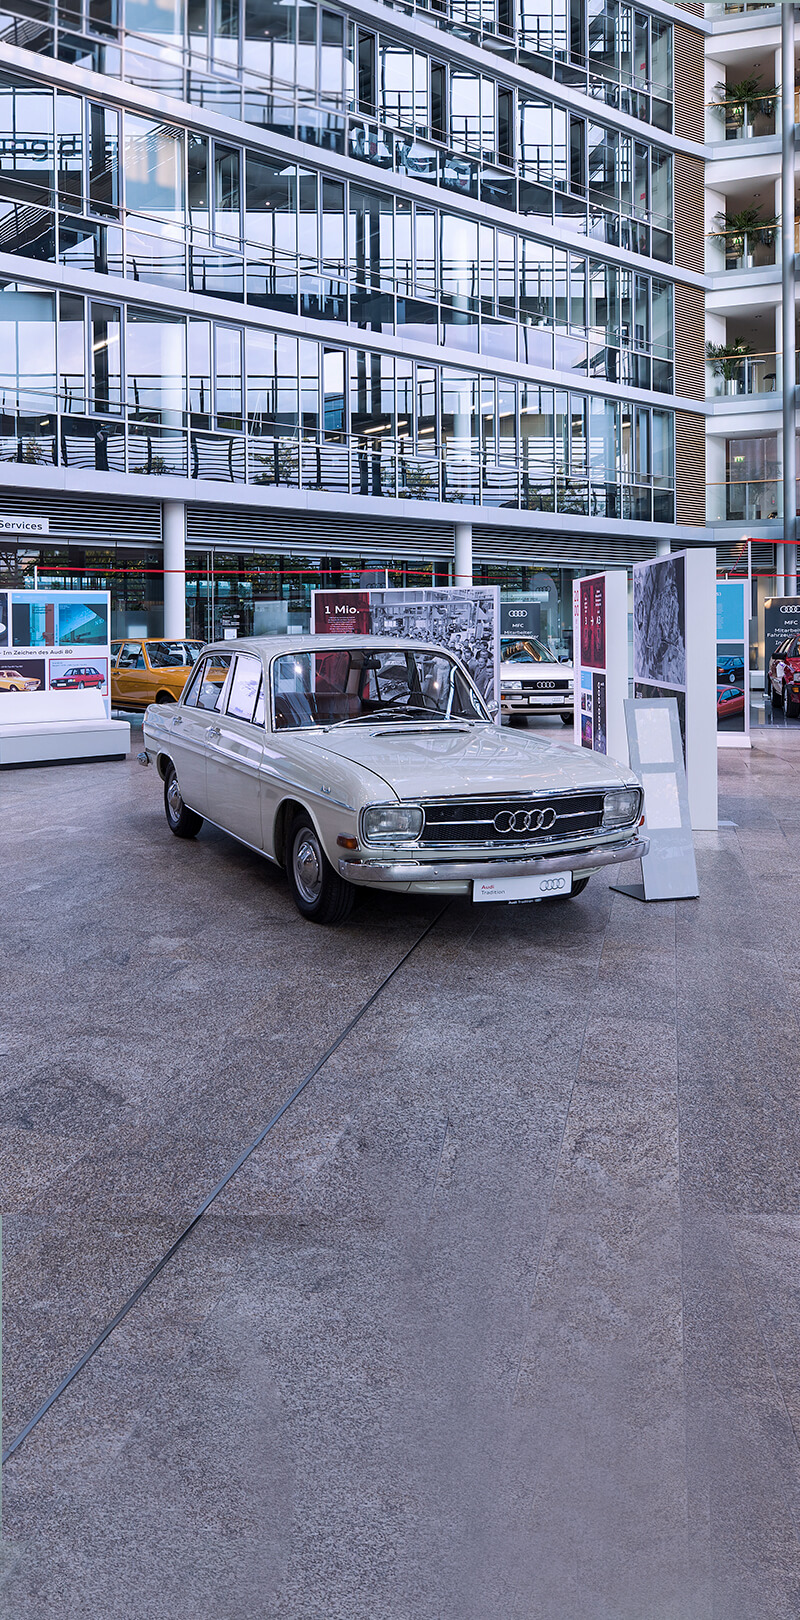 70 años de Audi en Ingolstadt: tres exposiciones especiales en el Audi Forum